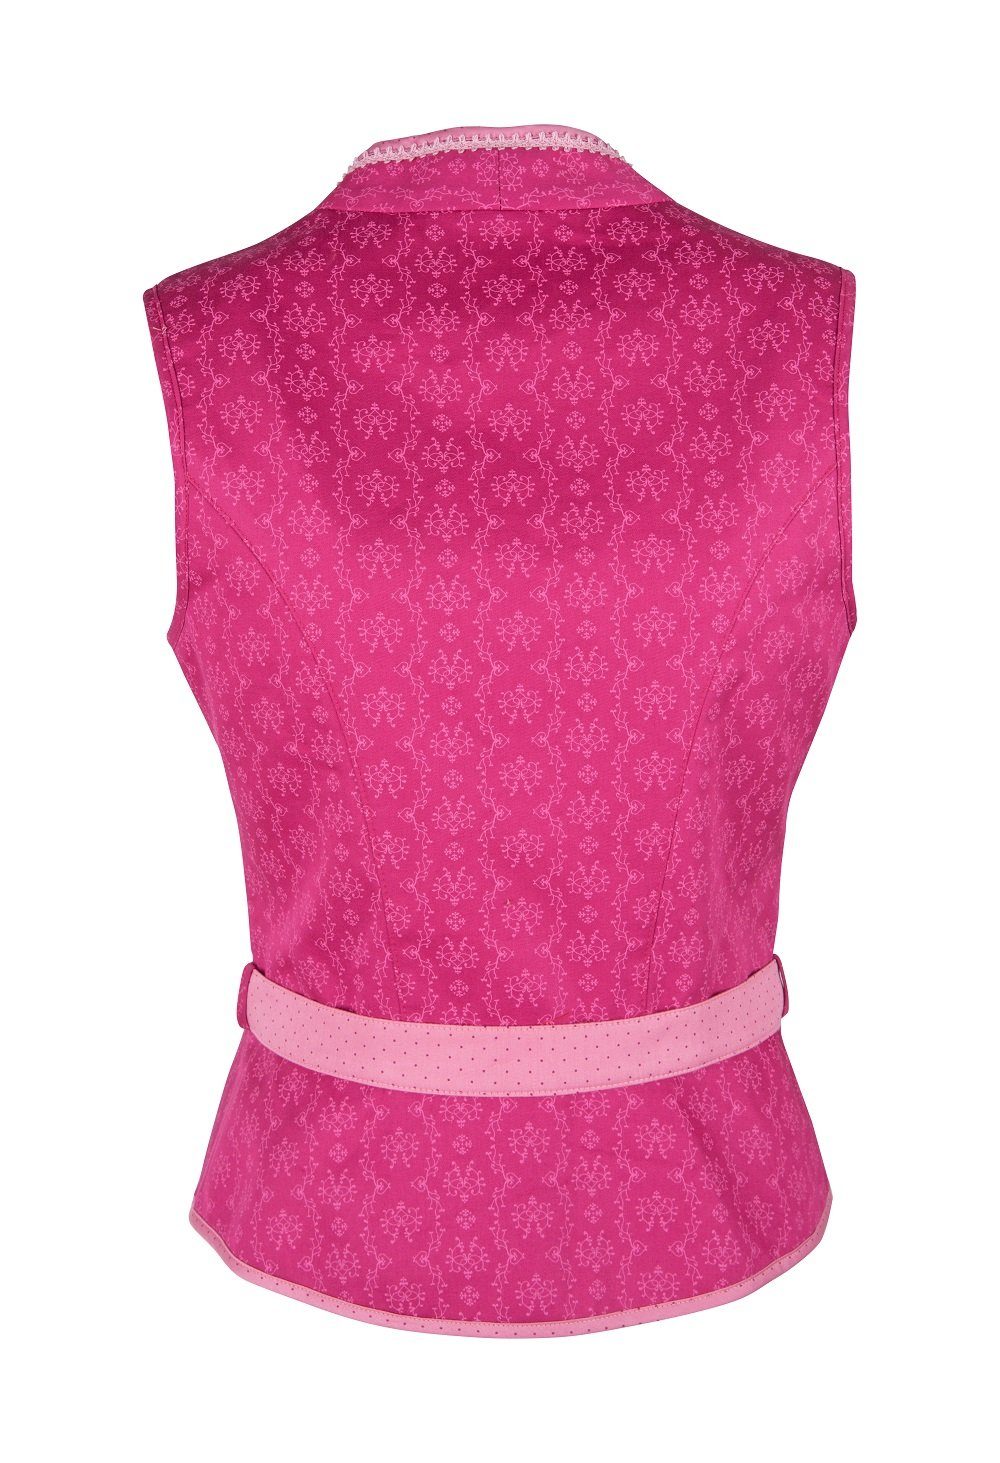 pink Trachtenbluse Mieder Lippert mit Knöpfe 51 cm Rückenlänge Gürtel Nicole Ramona